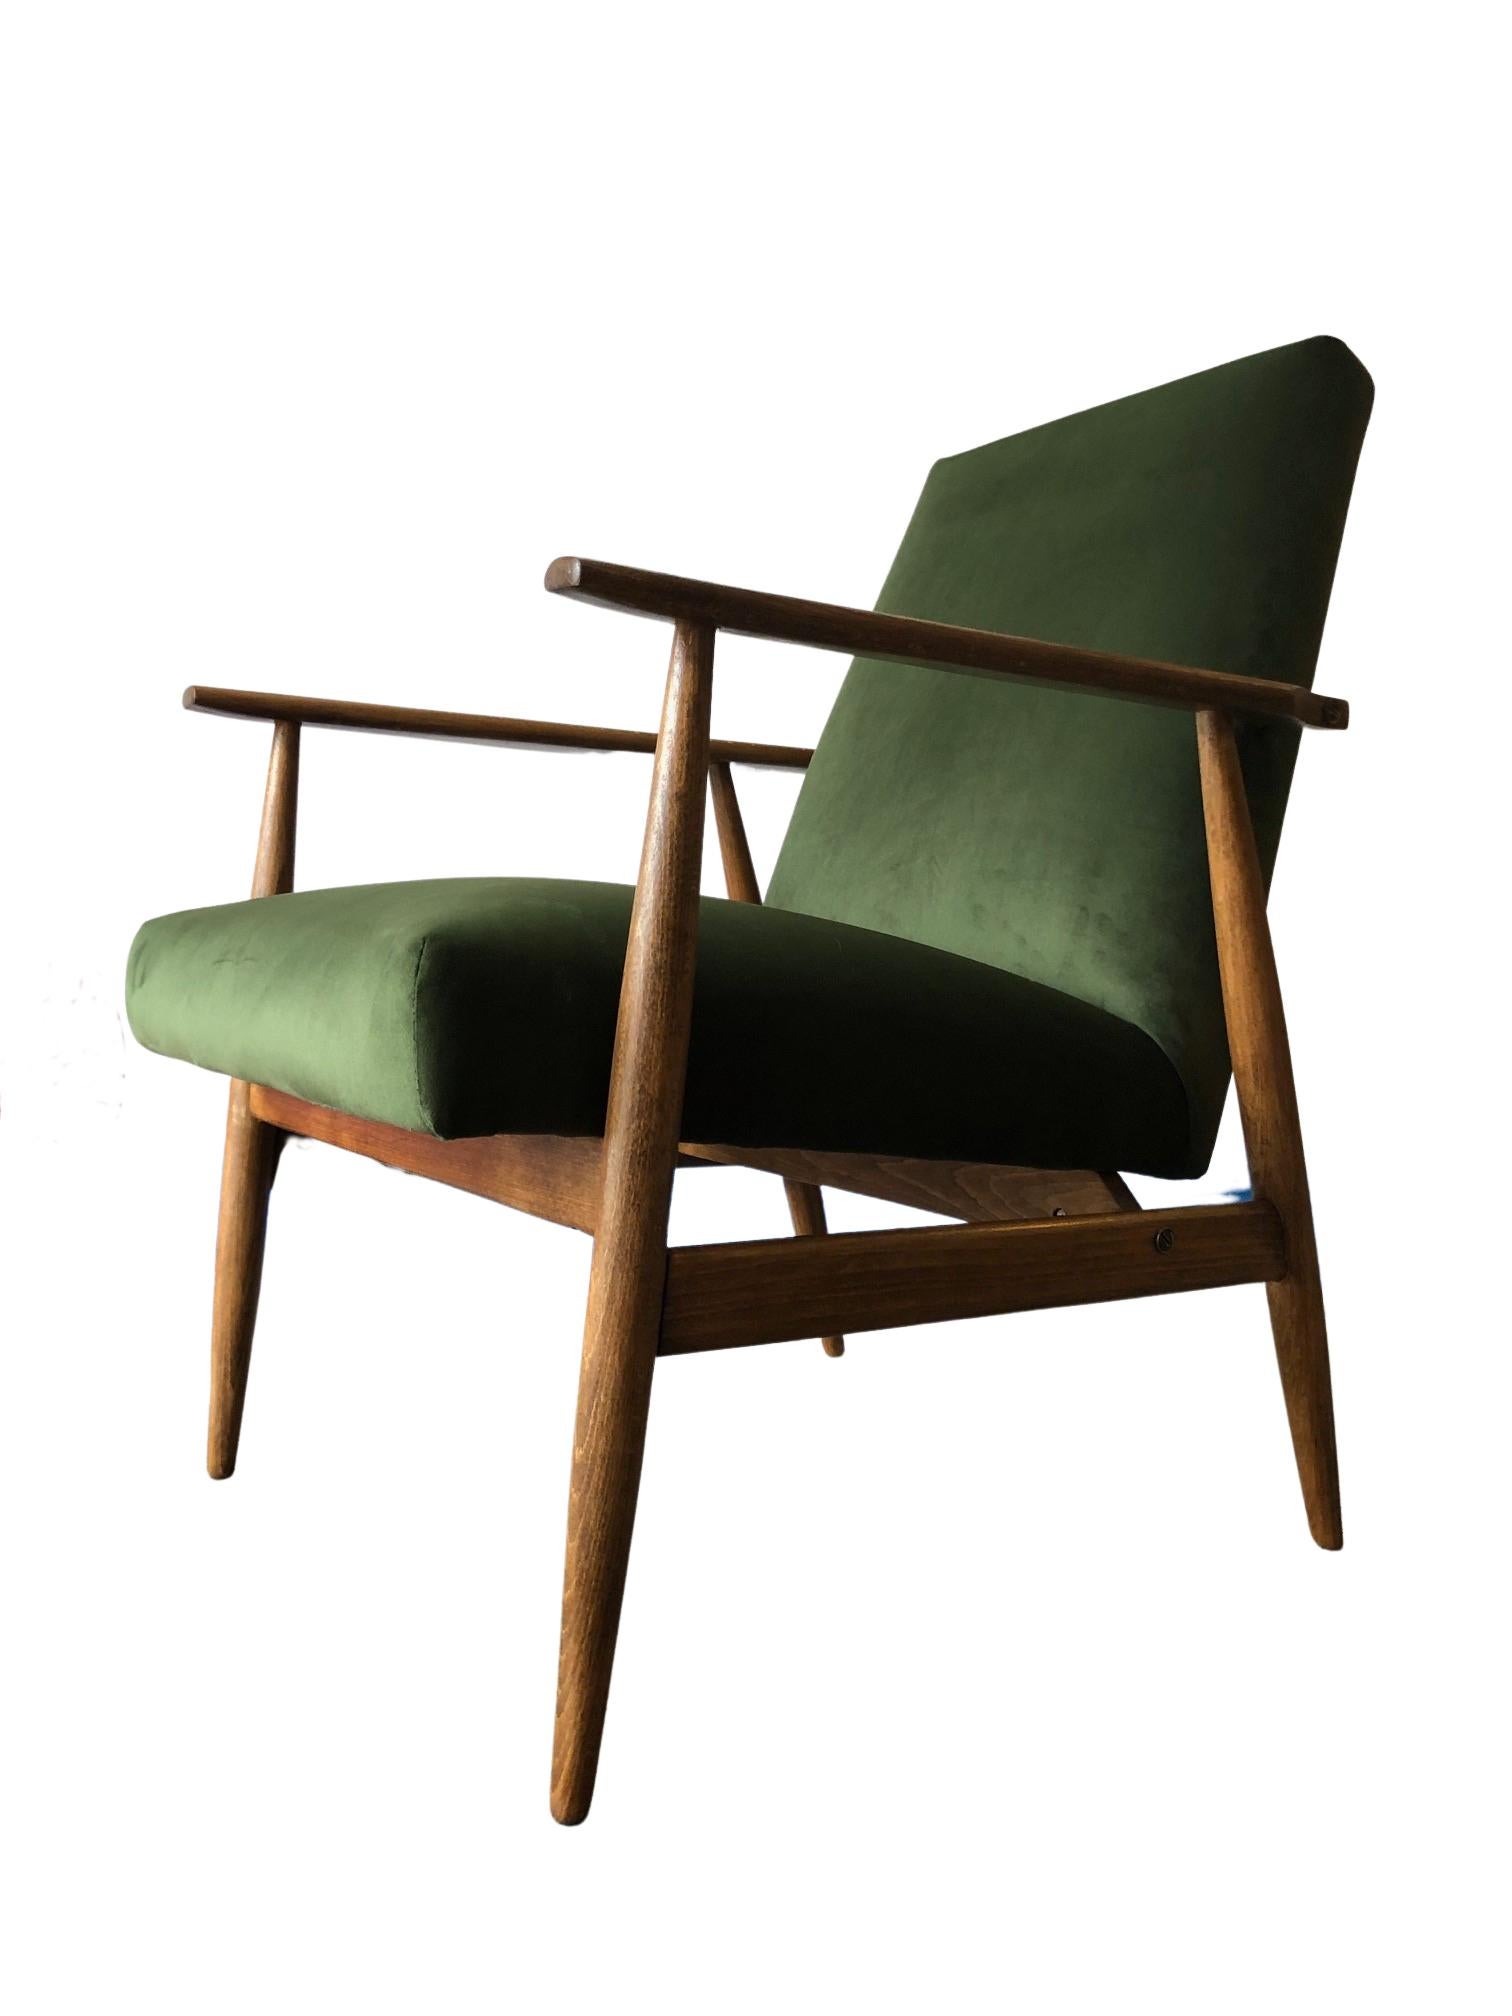 Les fauteuils ont été conçus par Henryk Lis. La structure est en bois de hêtre de couleur noyer chaud, finie avec un vernis satiné semi-mat. Le revêtement est un velours de haute qualité d'une belle couleur verte. L'ensemble a été entièrement